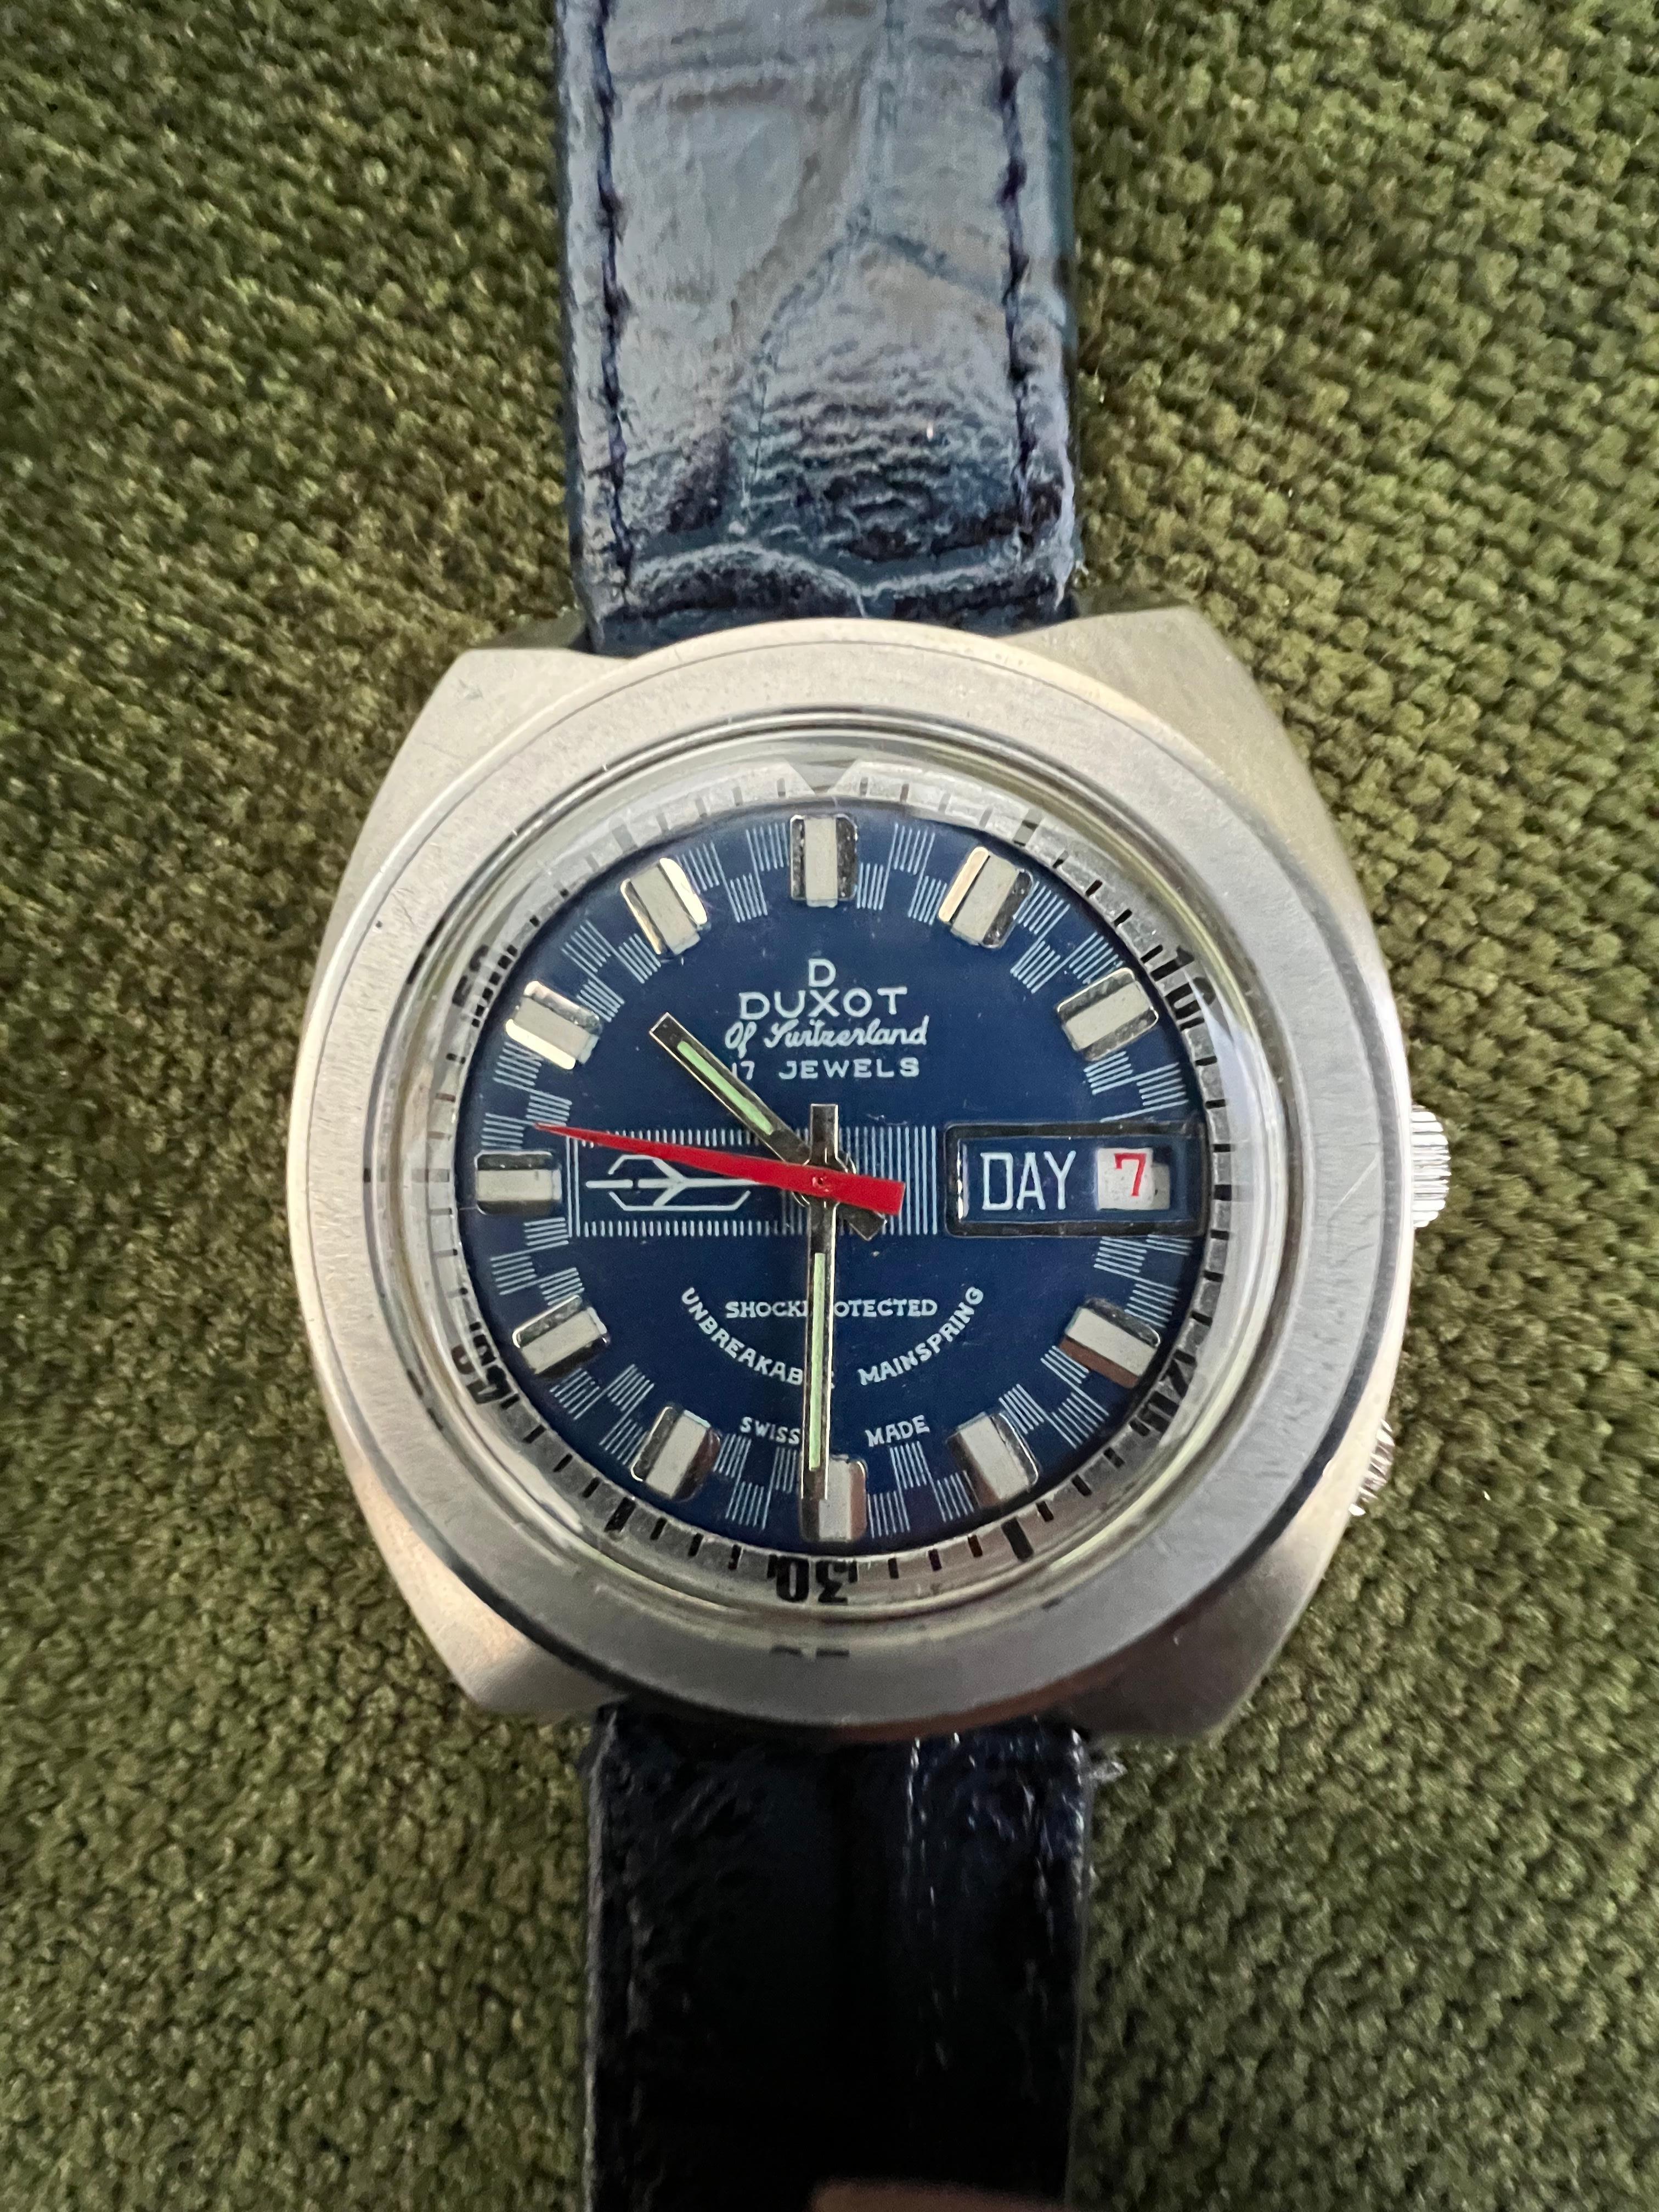 Blau 70s DUXOT OF SWITZERLAND 2 Zifferblatt - Flieger STYLE CASE.
In erstaunlich gutem Zustand. 
Ich liebe den 70er-Jahre-Retro-Look dieser sportlichen Uhr und ich liebe die Tatsache, dass sie neuwertig ist. 
GEHÄUSE: GROSSES GANZSTAHLGEHÄUSE MIT